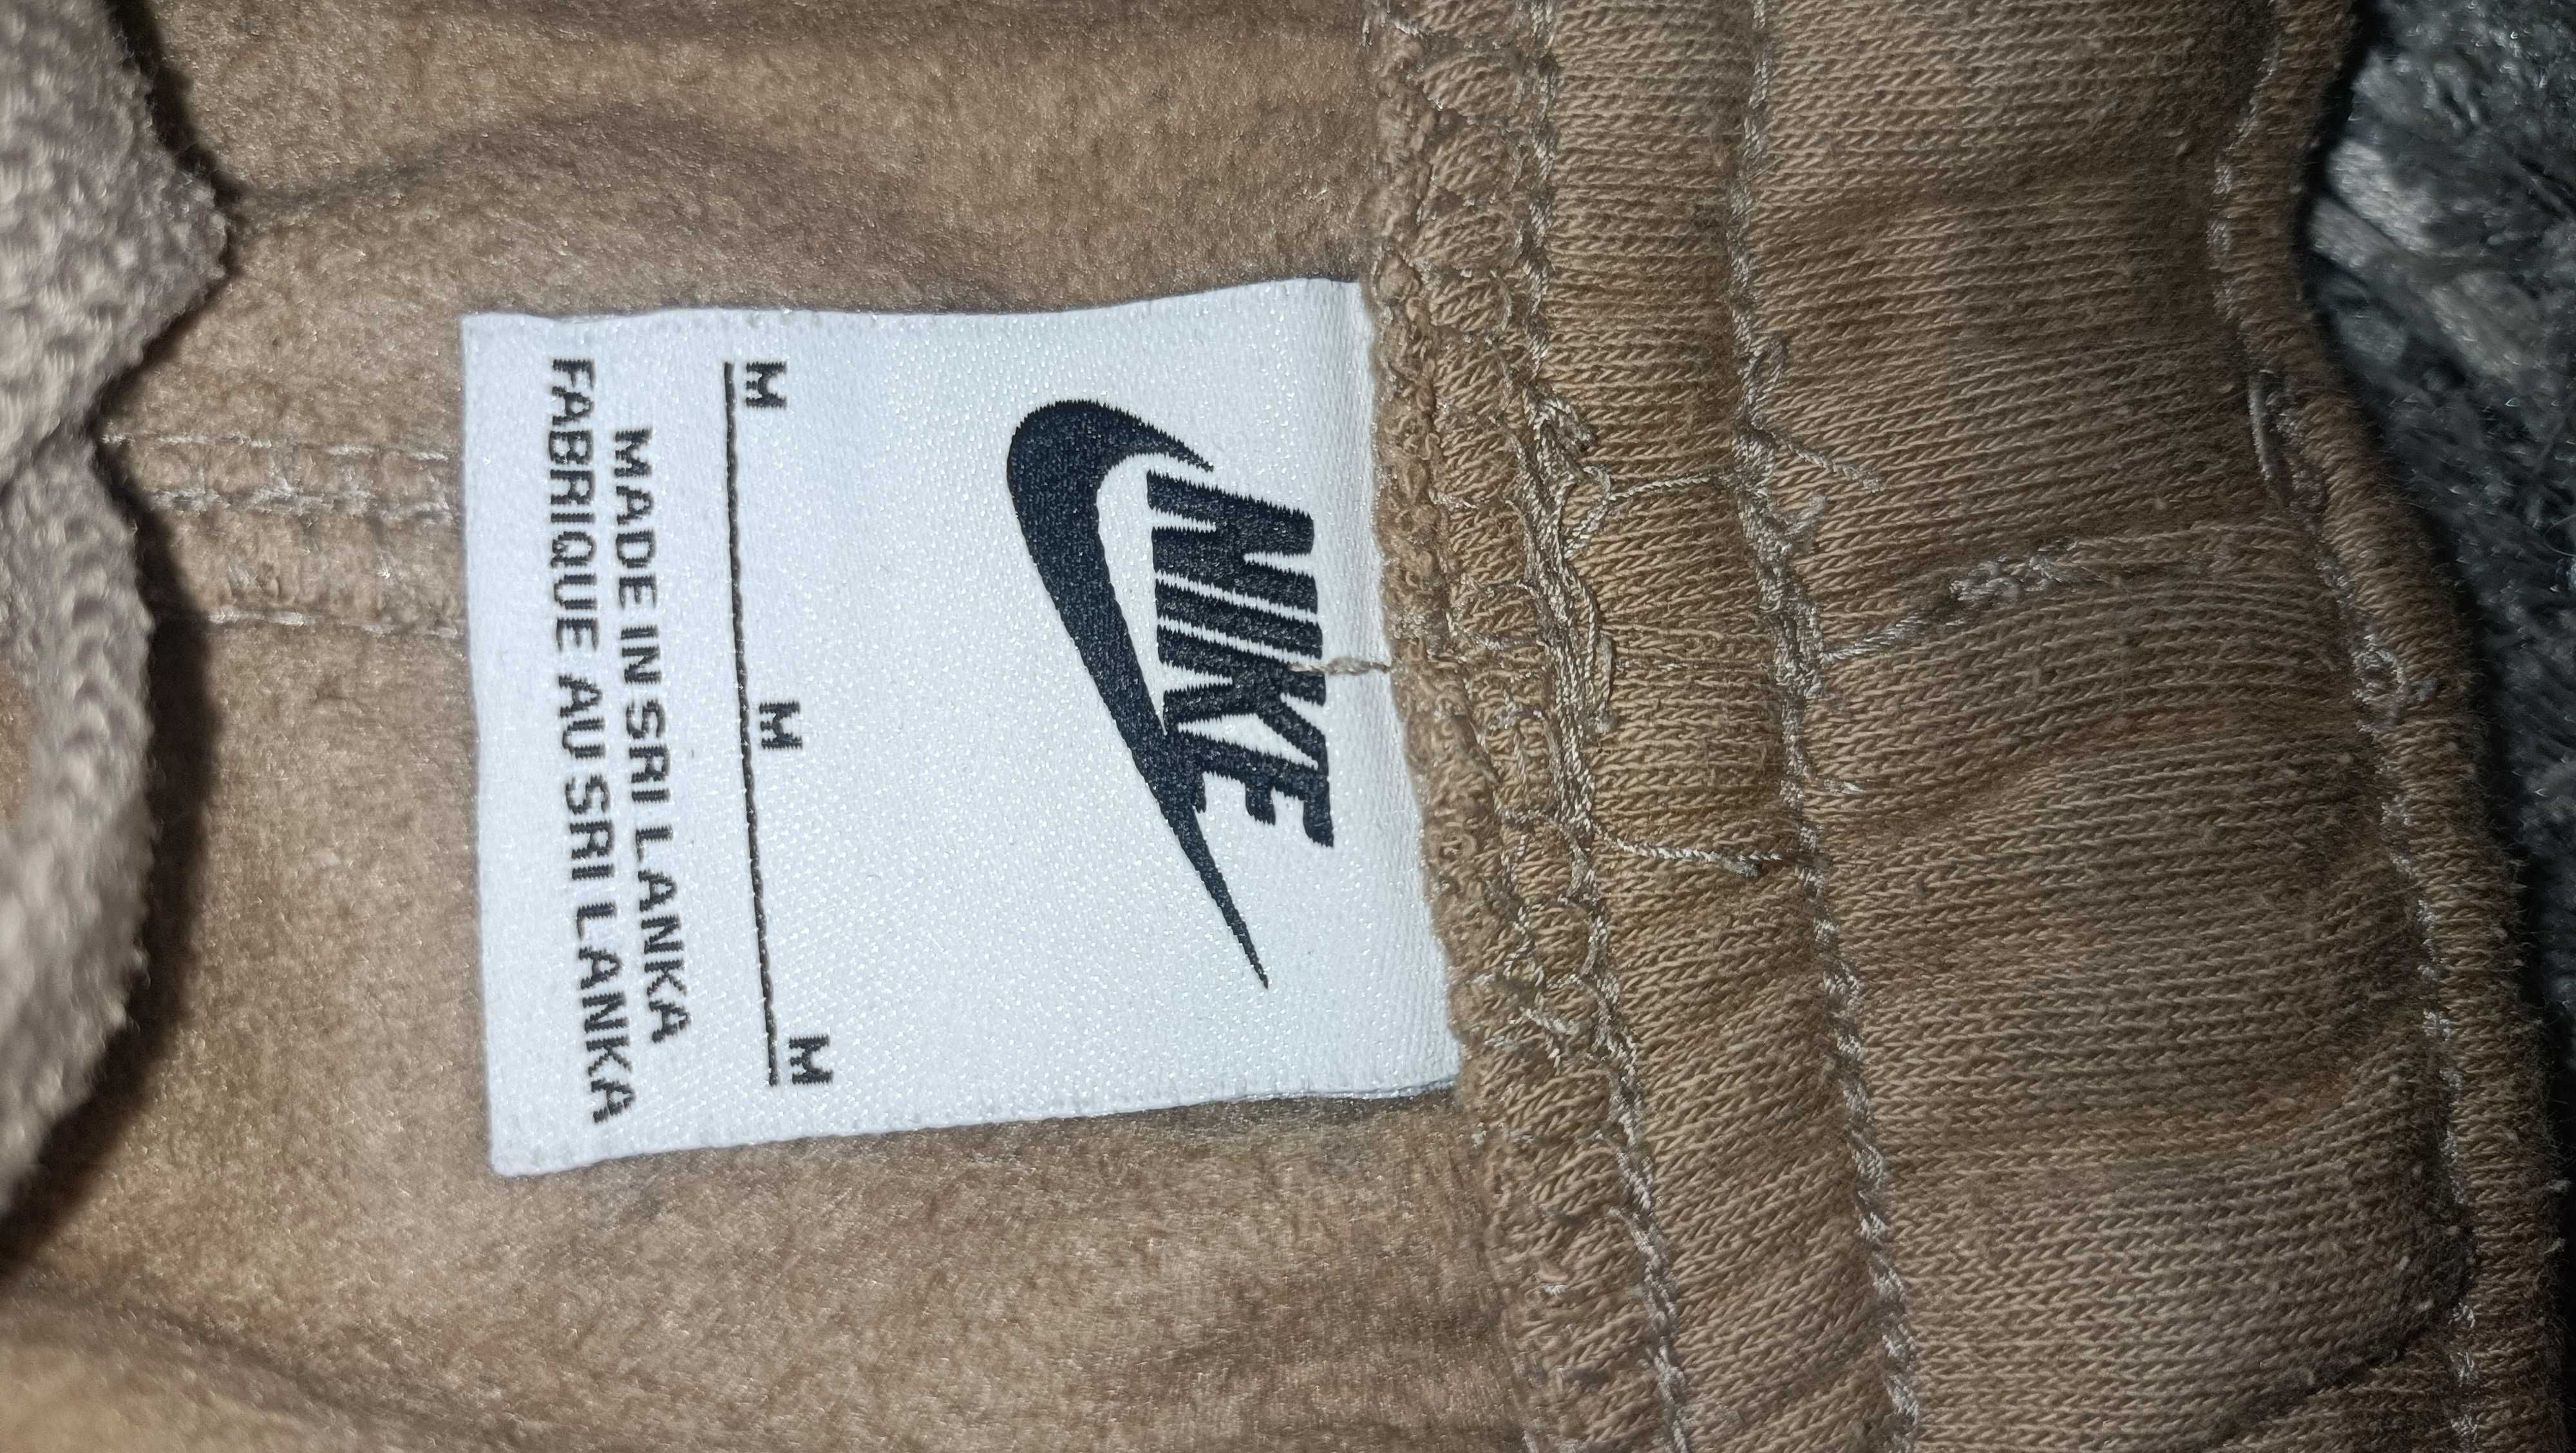 Pantaloni Nike 130 lei